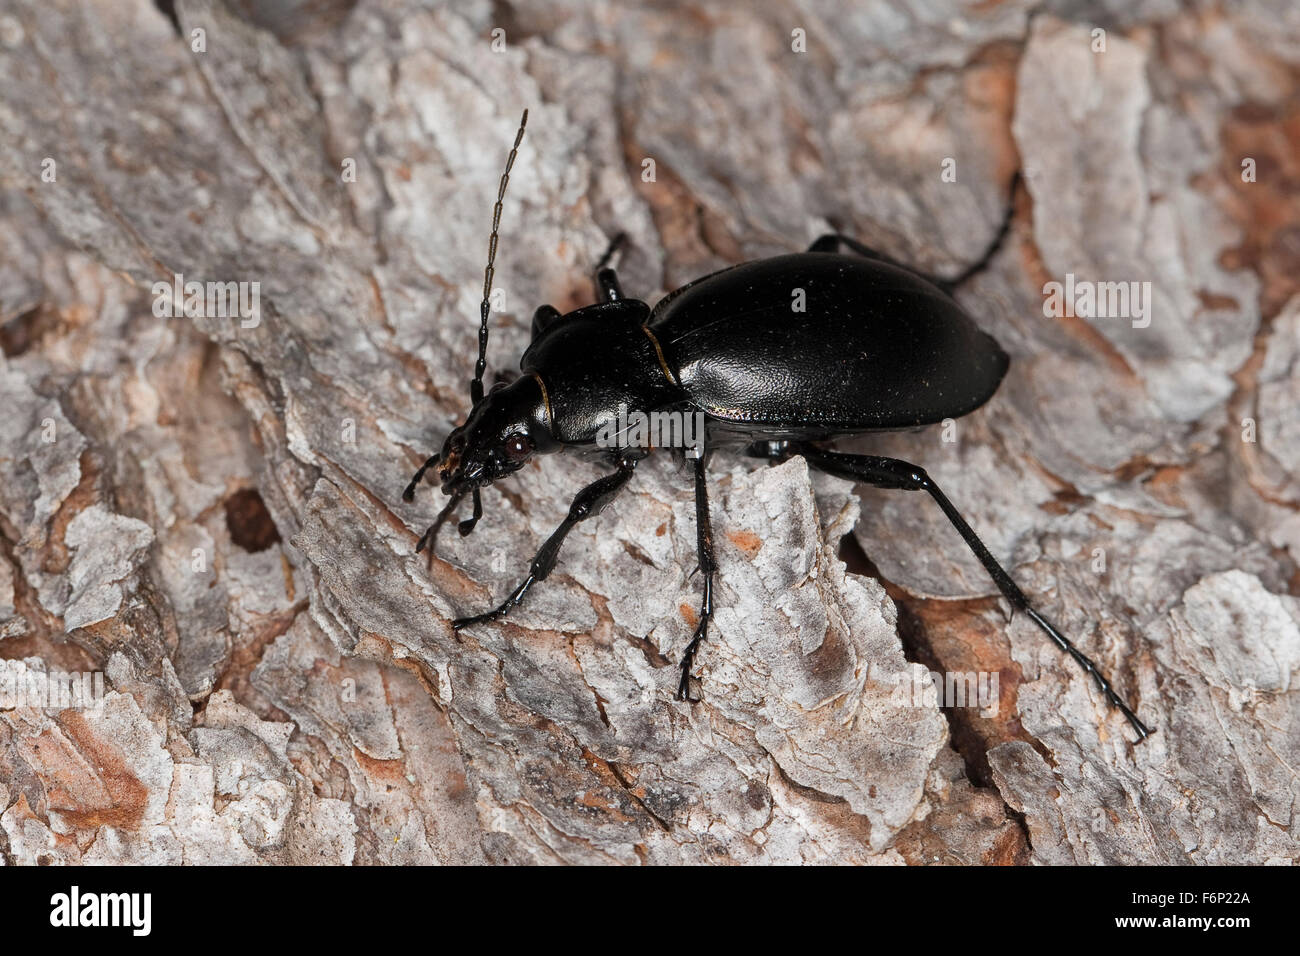 Smooth ground beetle, Glatter Laufkäfer, Glatt-Laufkäfer, Carabus glabratus, Oreocarabus glabratus Stock Photo